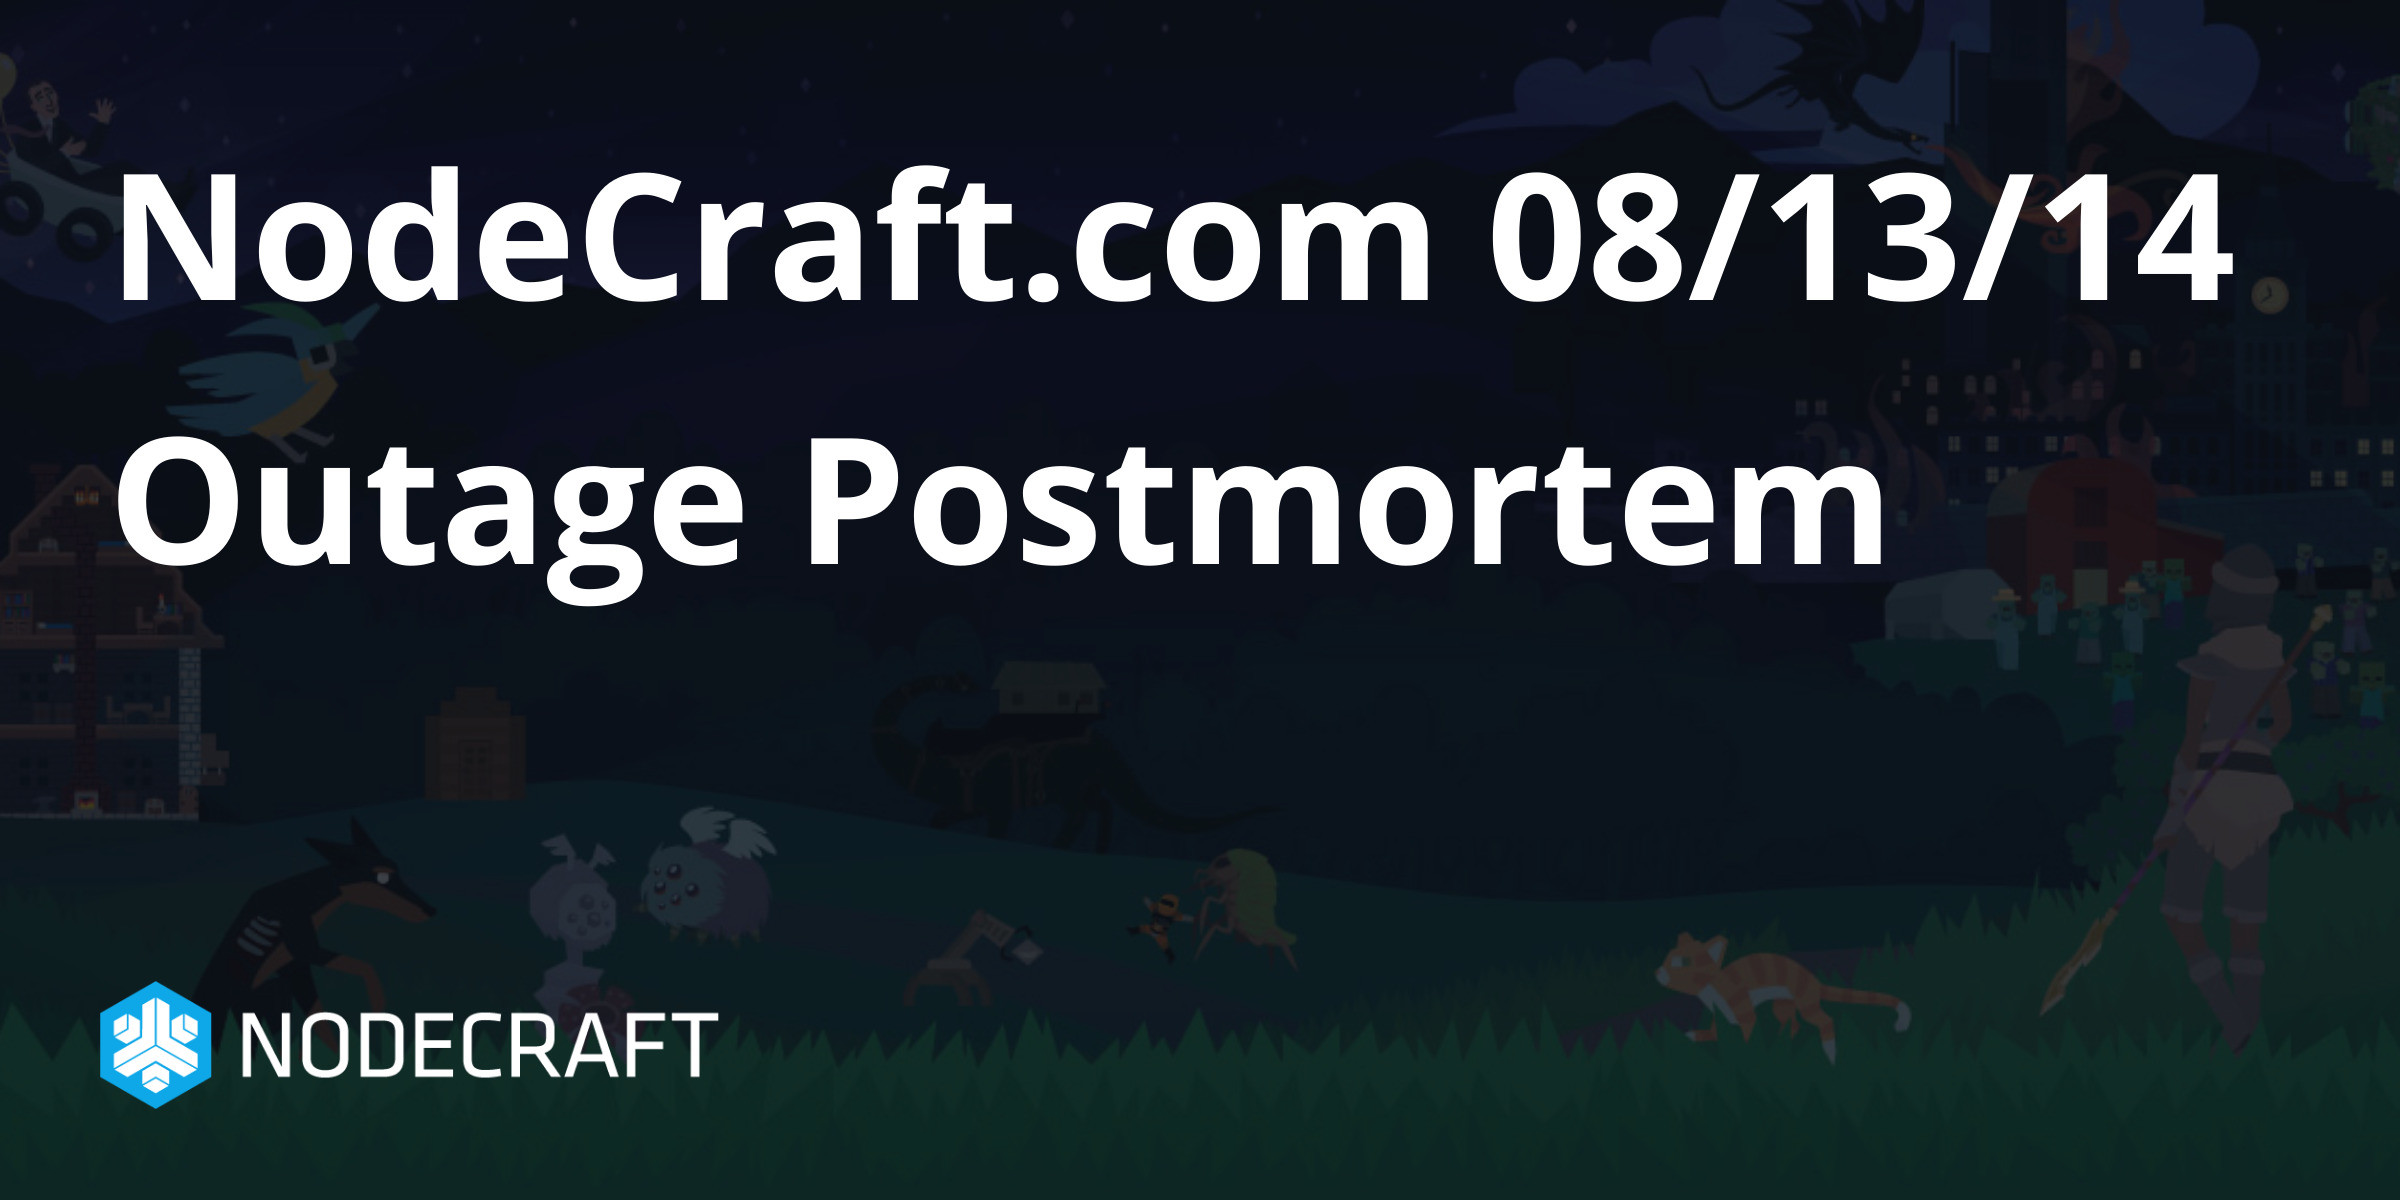 NodeCraft.com 08/13/14 Outage Postmortem